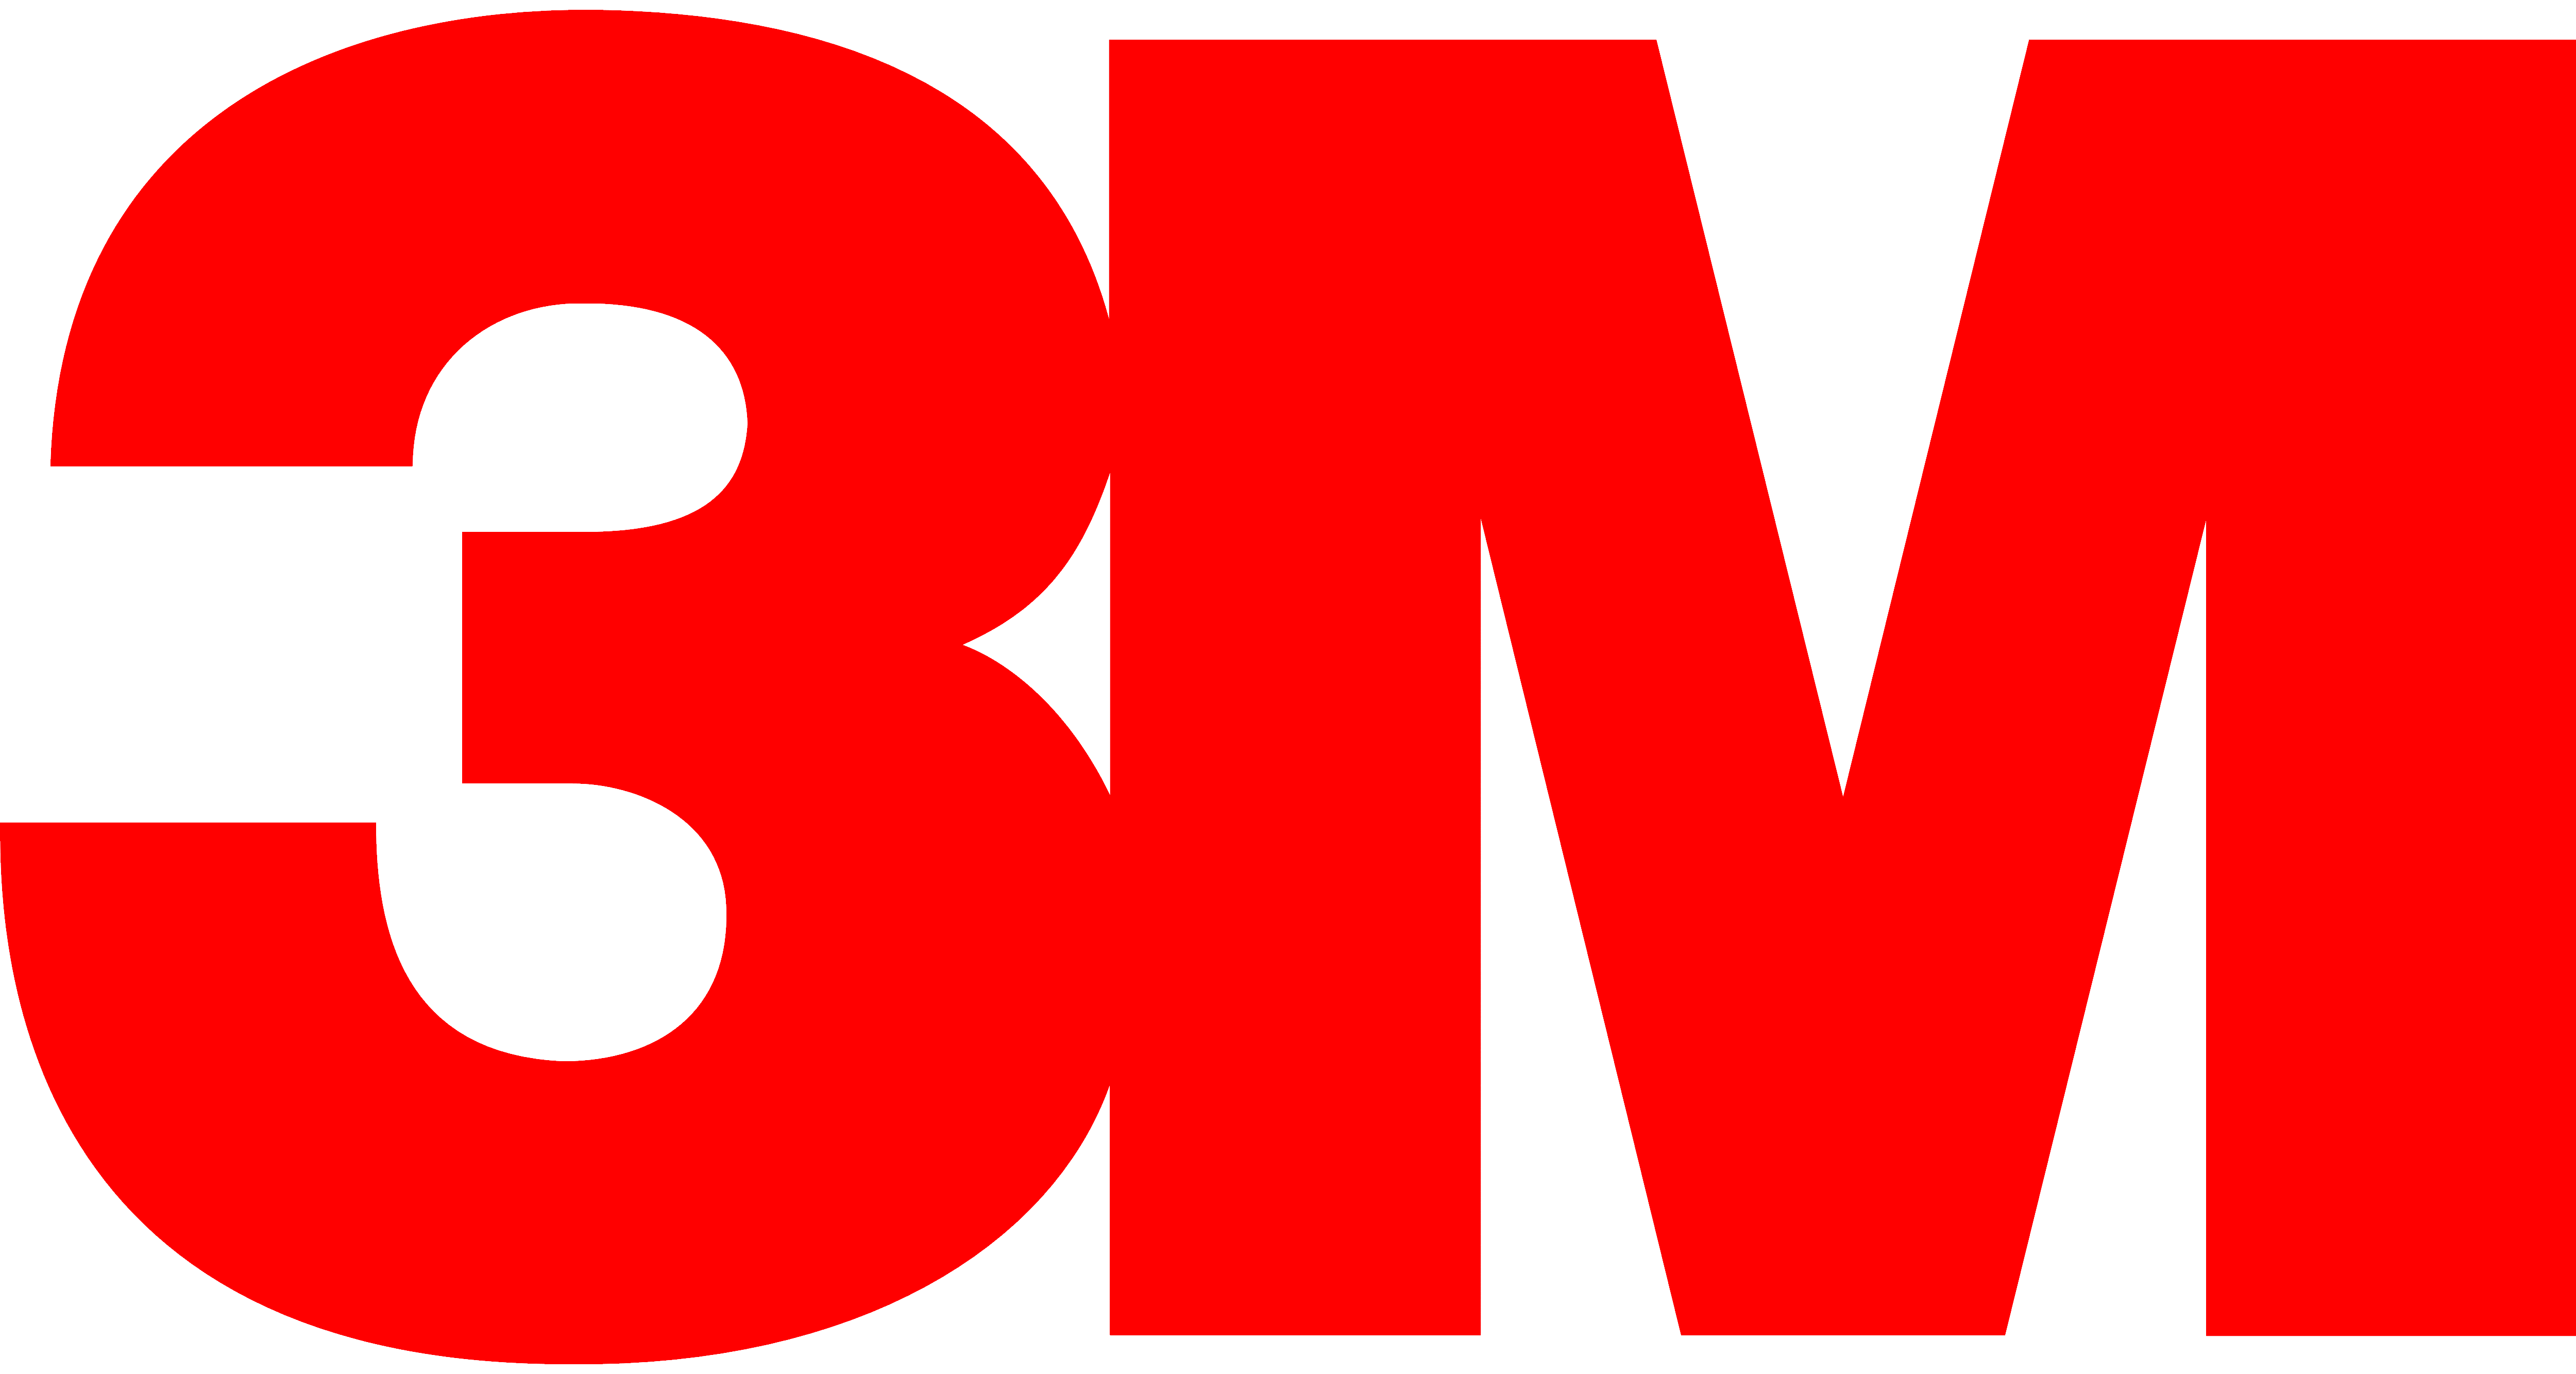 3M logo, logotype, full red